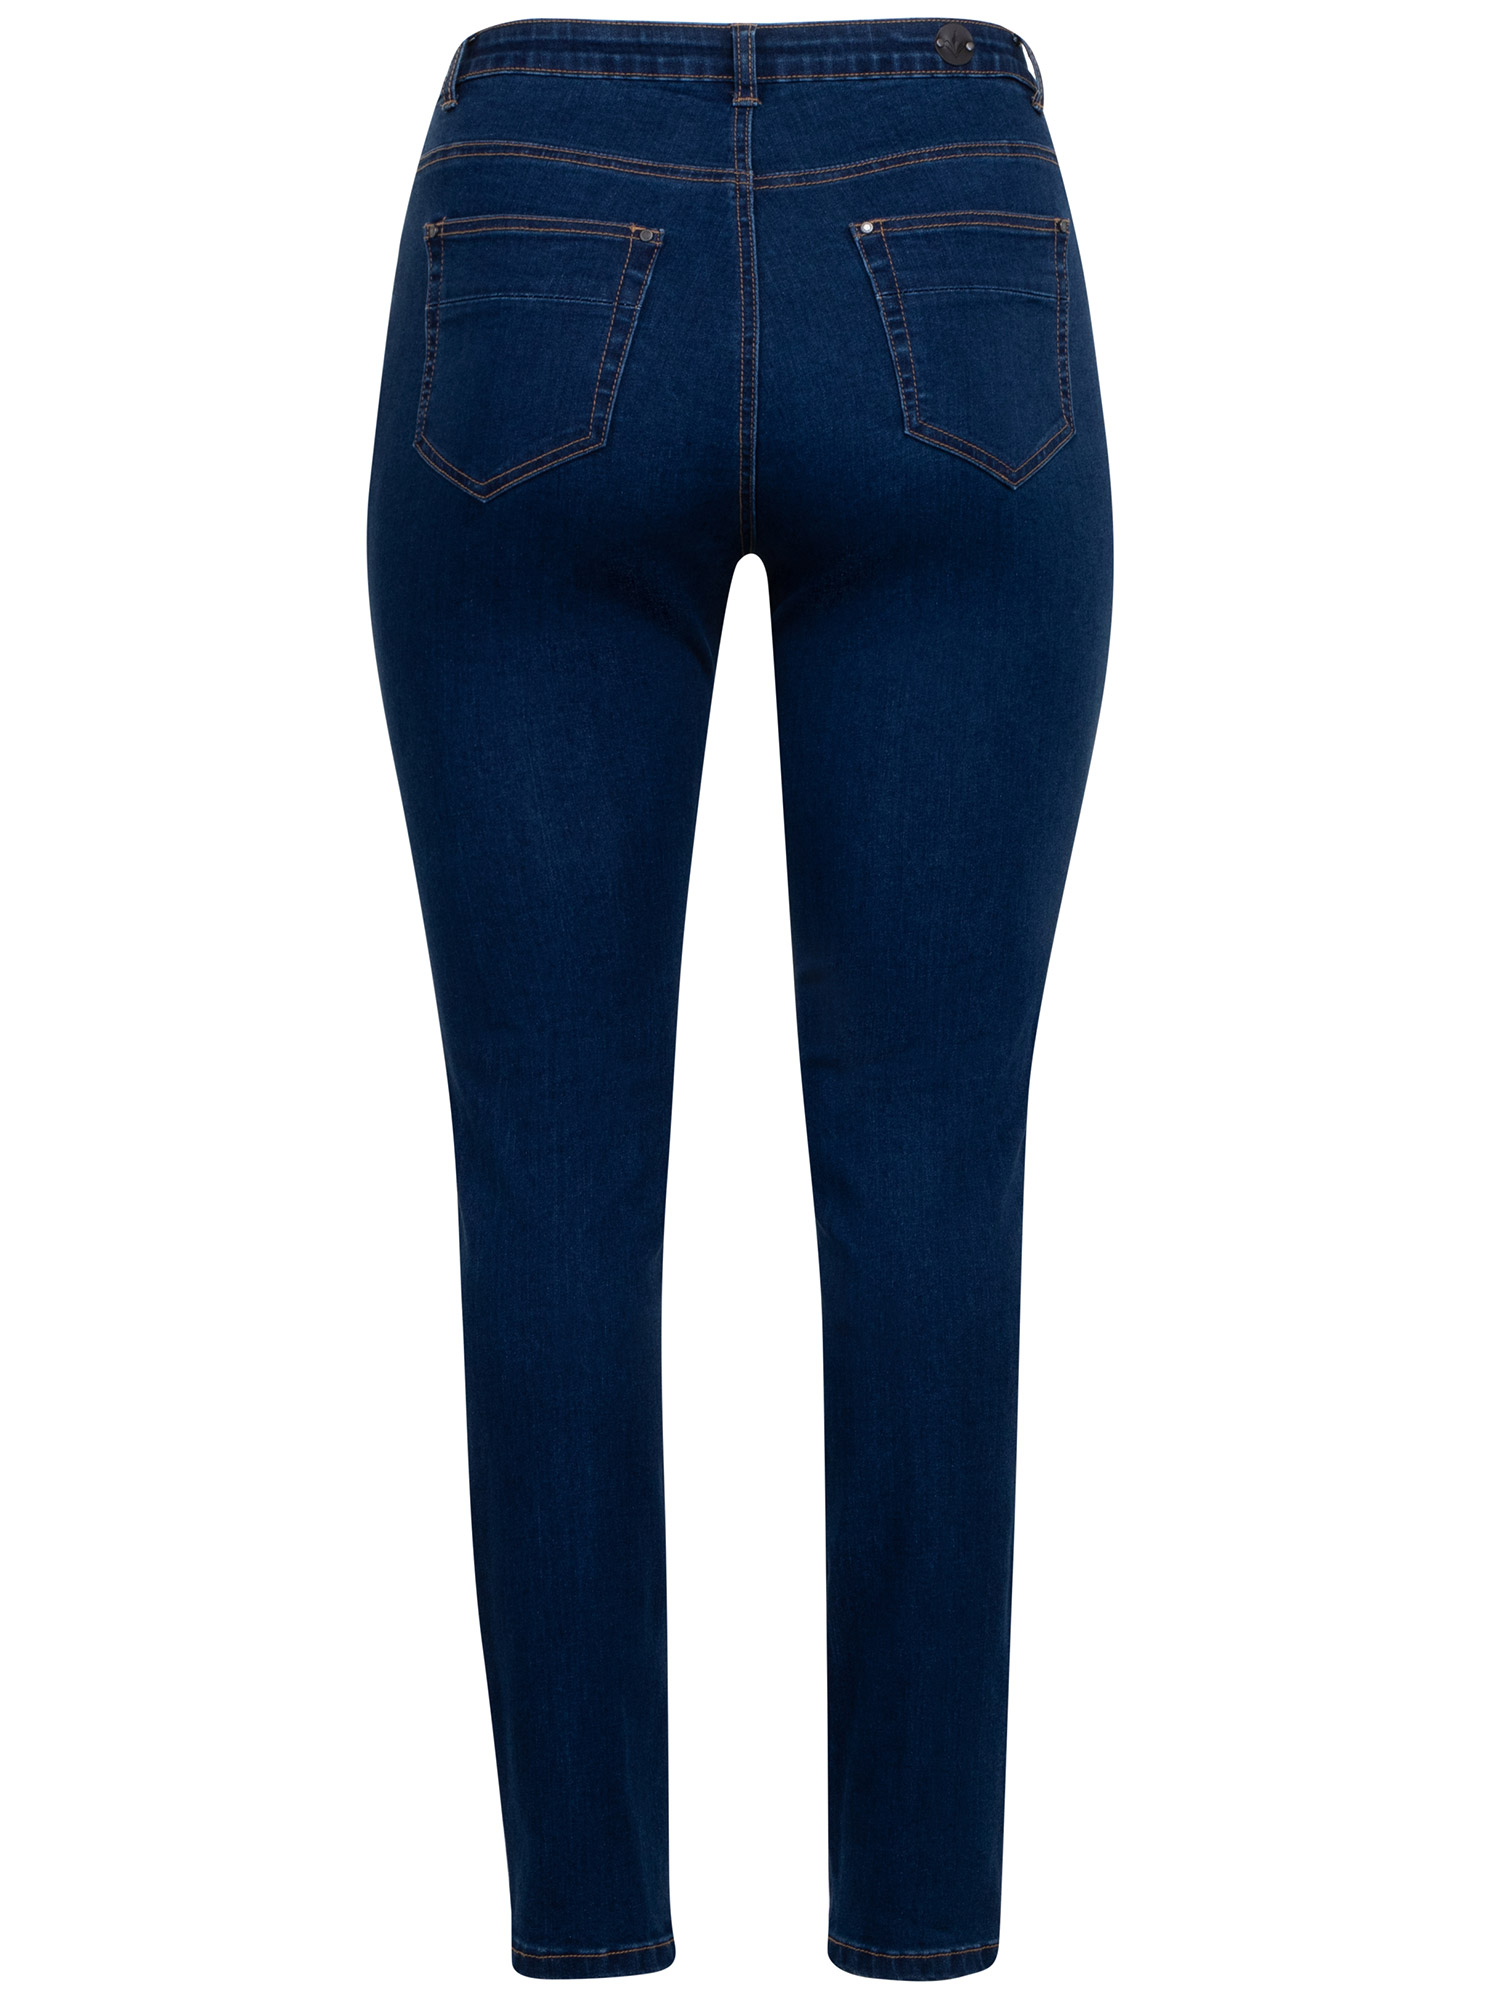 MILAN - Blå strækbar jeans fra Adia